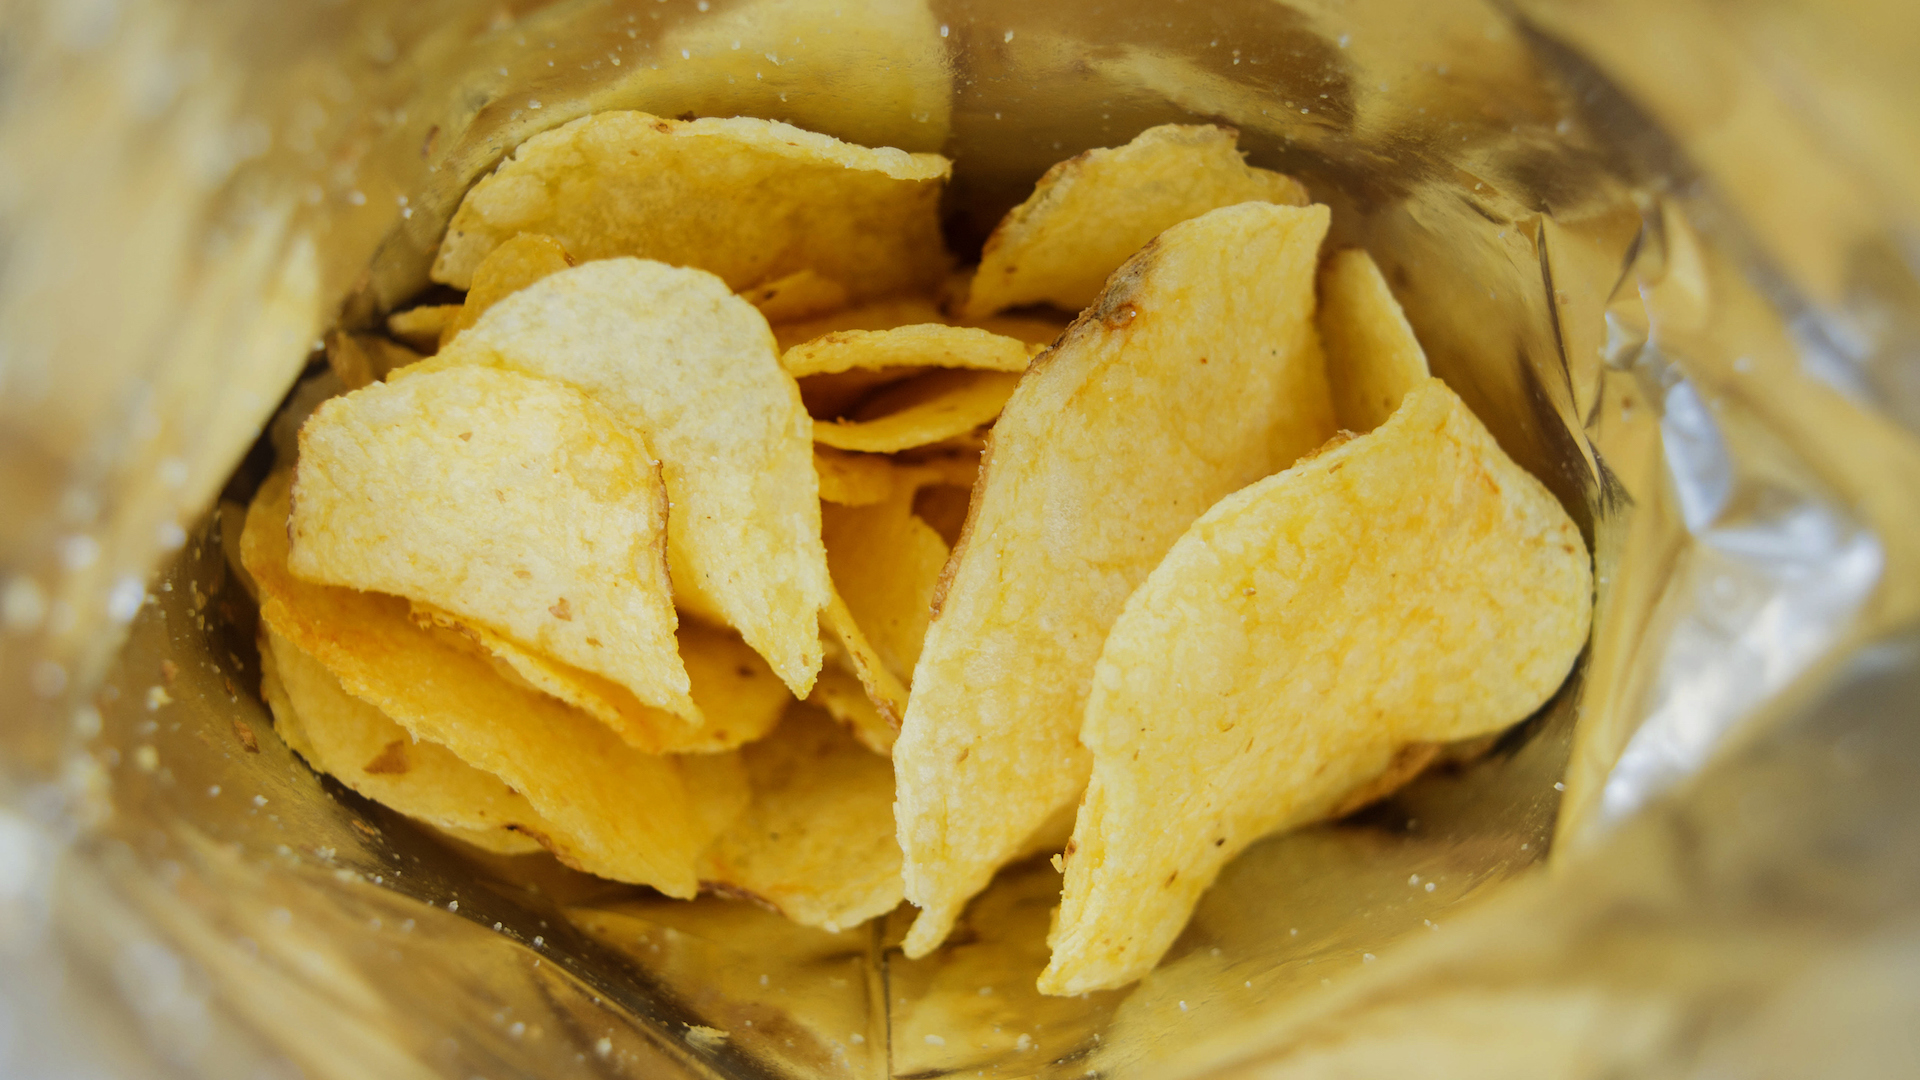 A bag of crisps